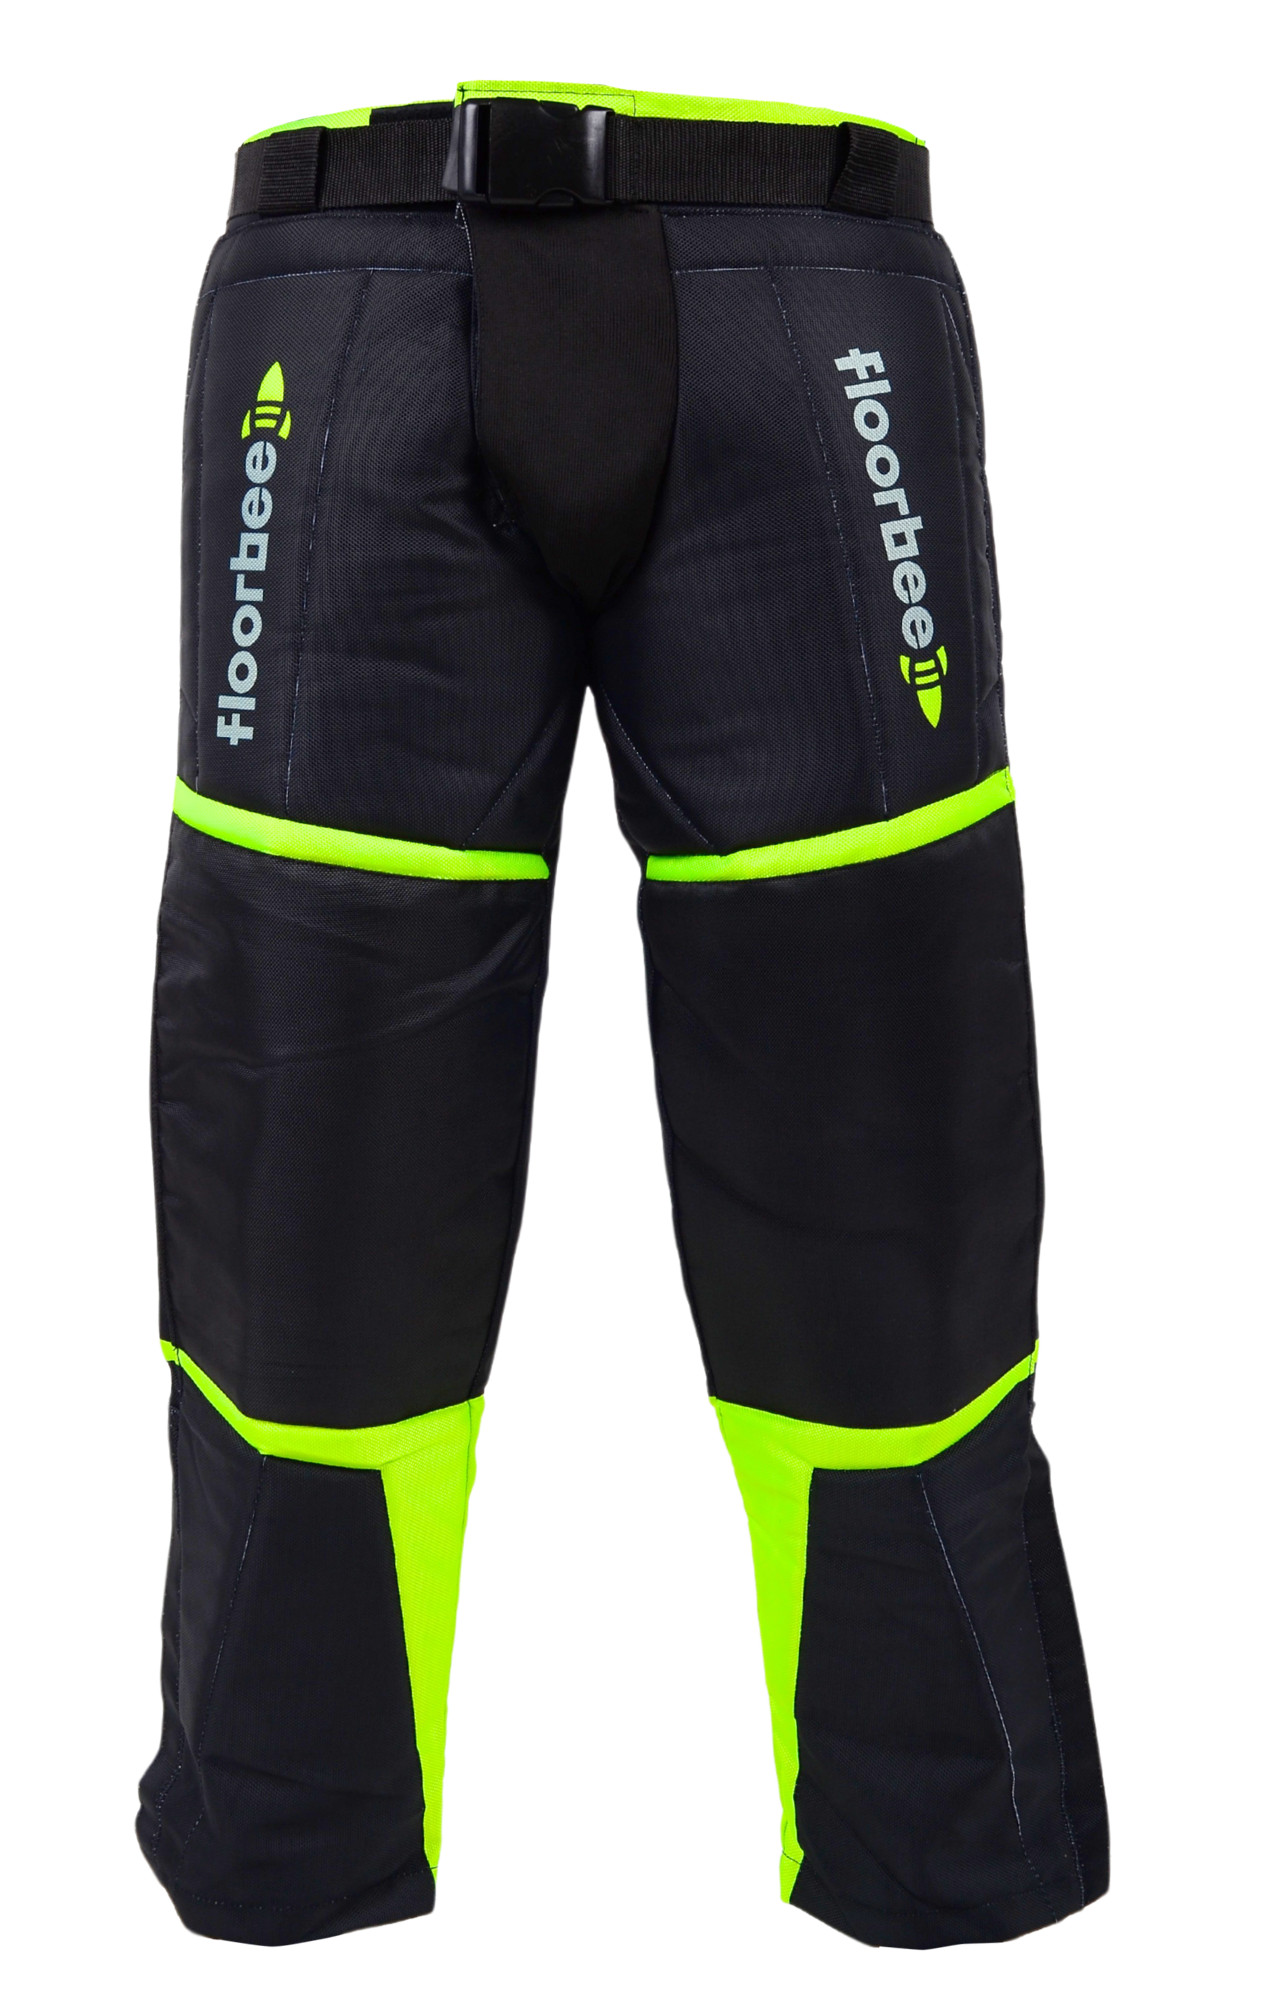 FLOORBEE Goalie Armor Pants 3.0 S, černá / žlutá